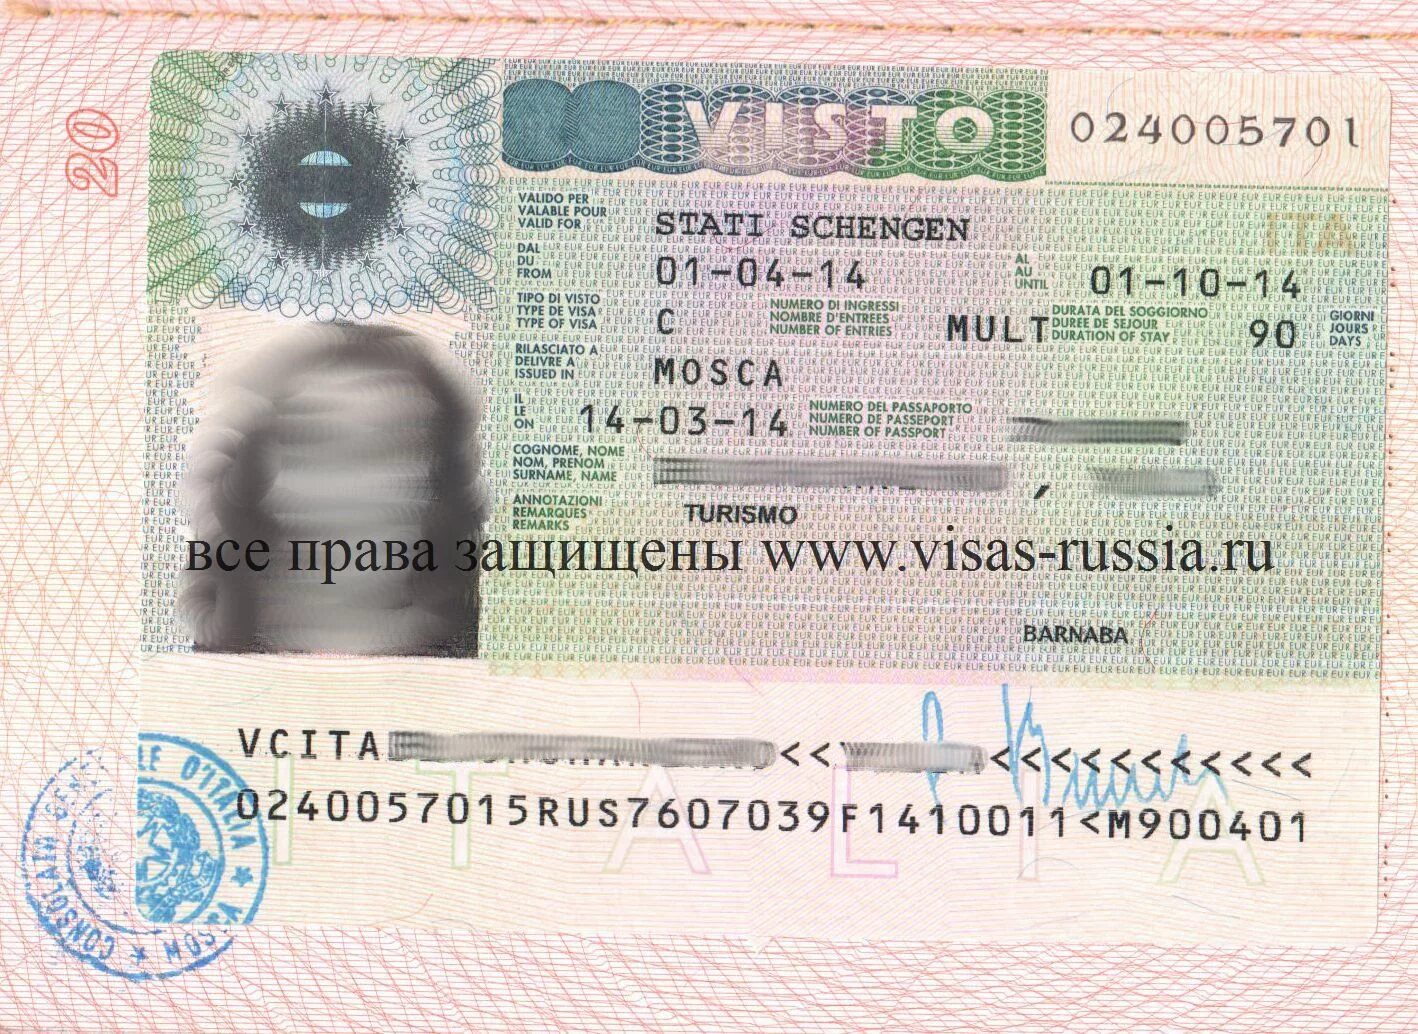 Италия нужна ли виза для россиян. Шенгенская виза в Италию 2021. Виза в Италию 2022 для россиян шенгенская. Итальянская мультивиза. Шенгенская бизнес виза.